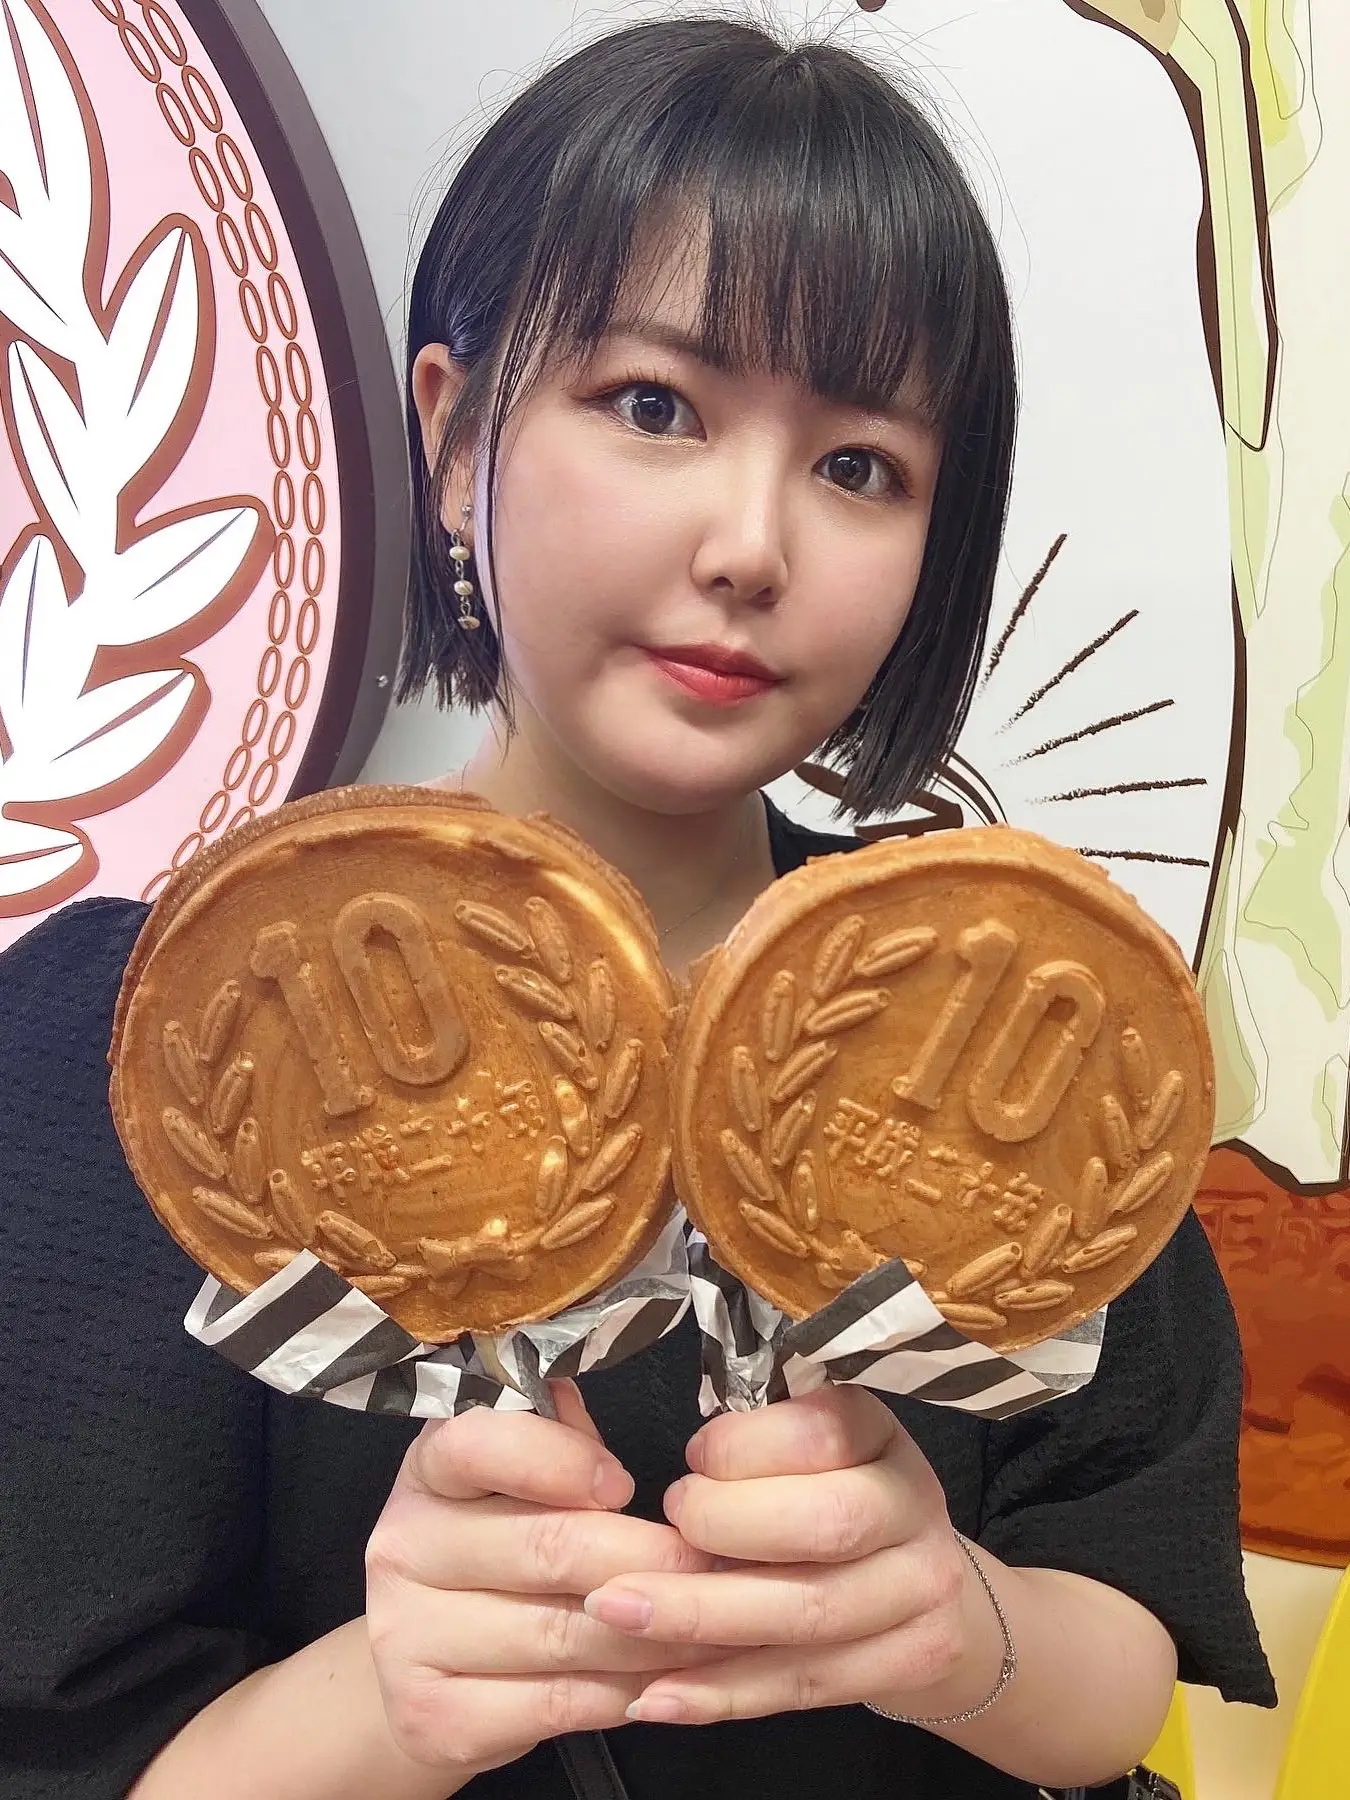 9/8オープン】韓国で人気の屋台グルメ「10円パン」が日本で食べられる